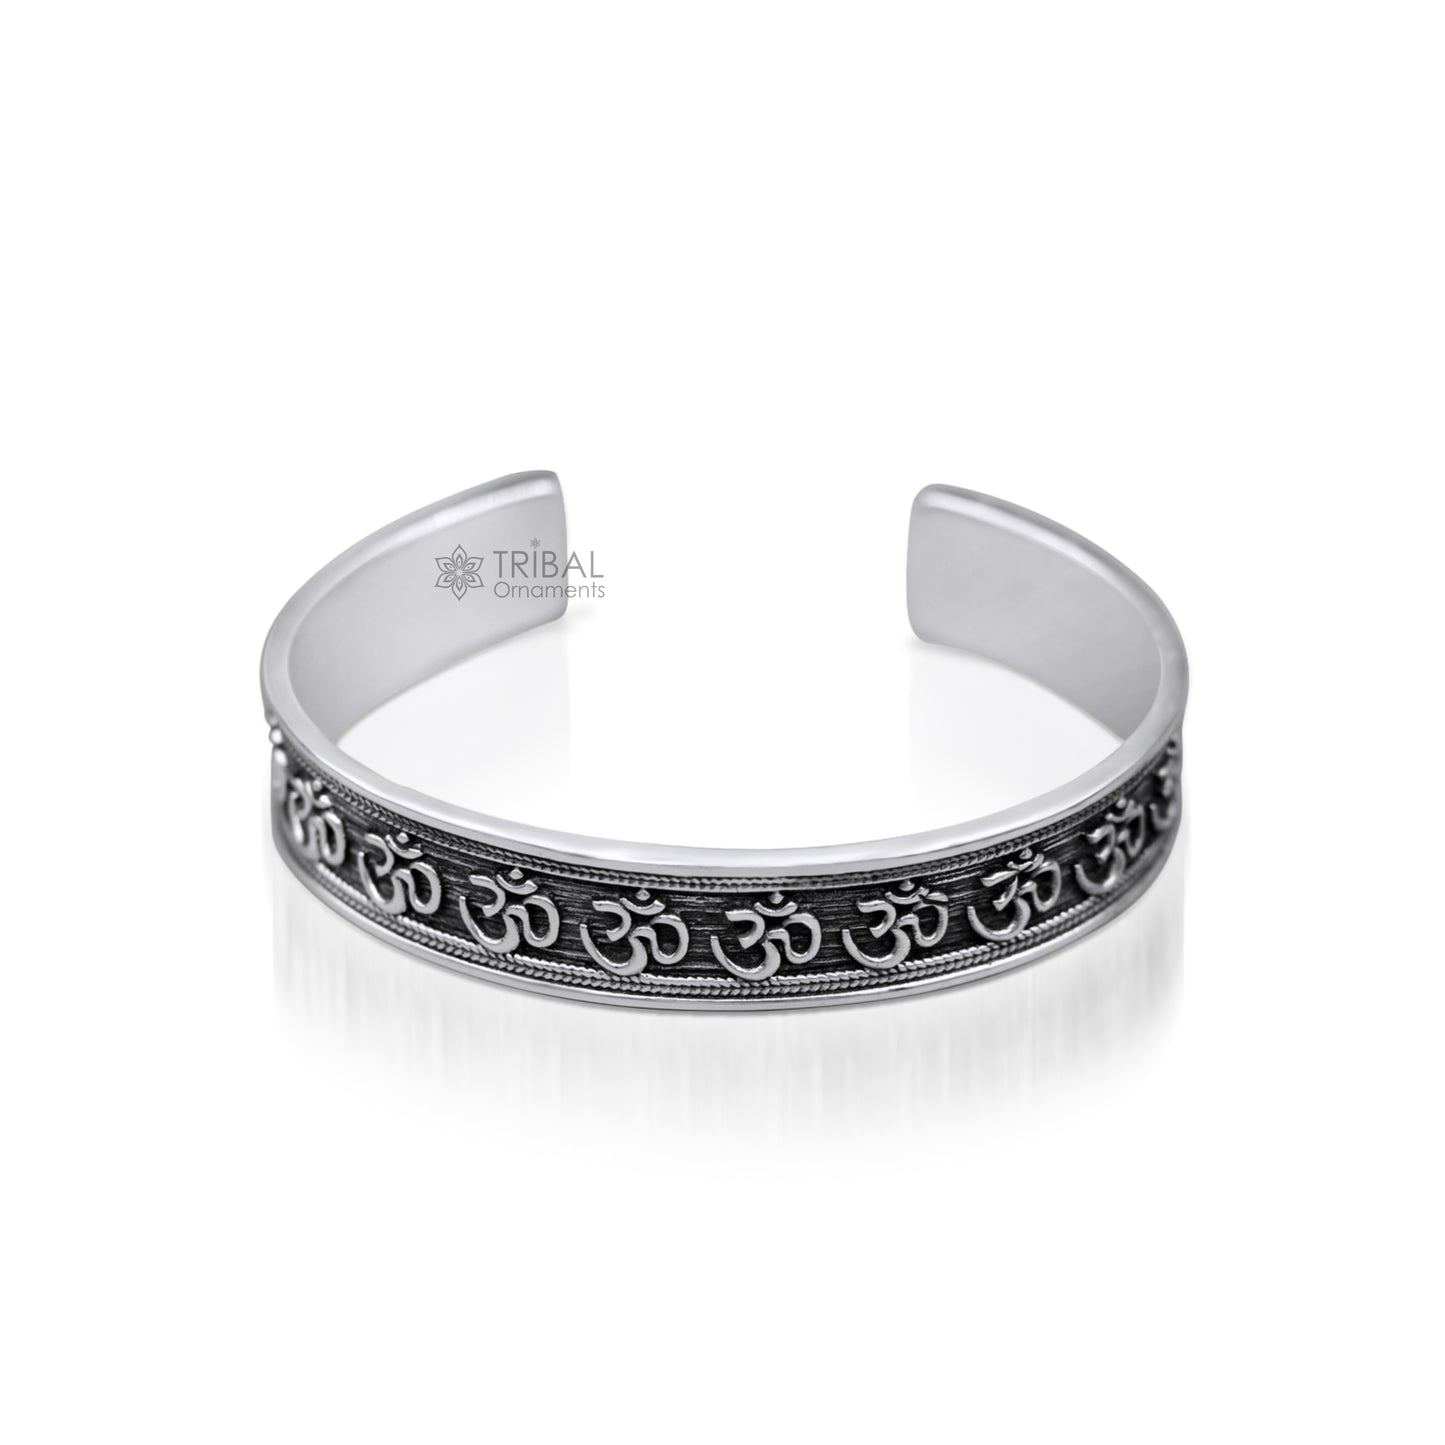 925 sterling Stylish handcrafted silver 'AUM' mantra bangle bracelet adjustable kada unisex ethnic stylish fashionable jewelry india nsk140